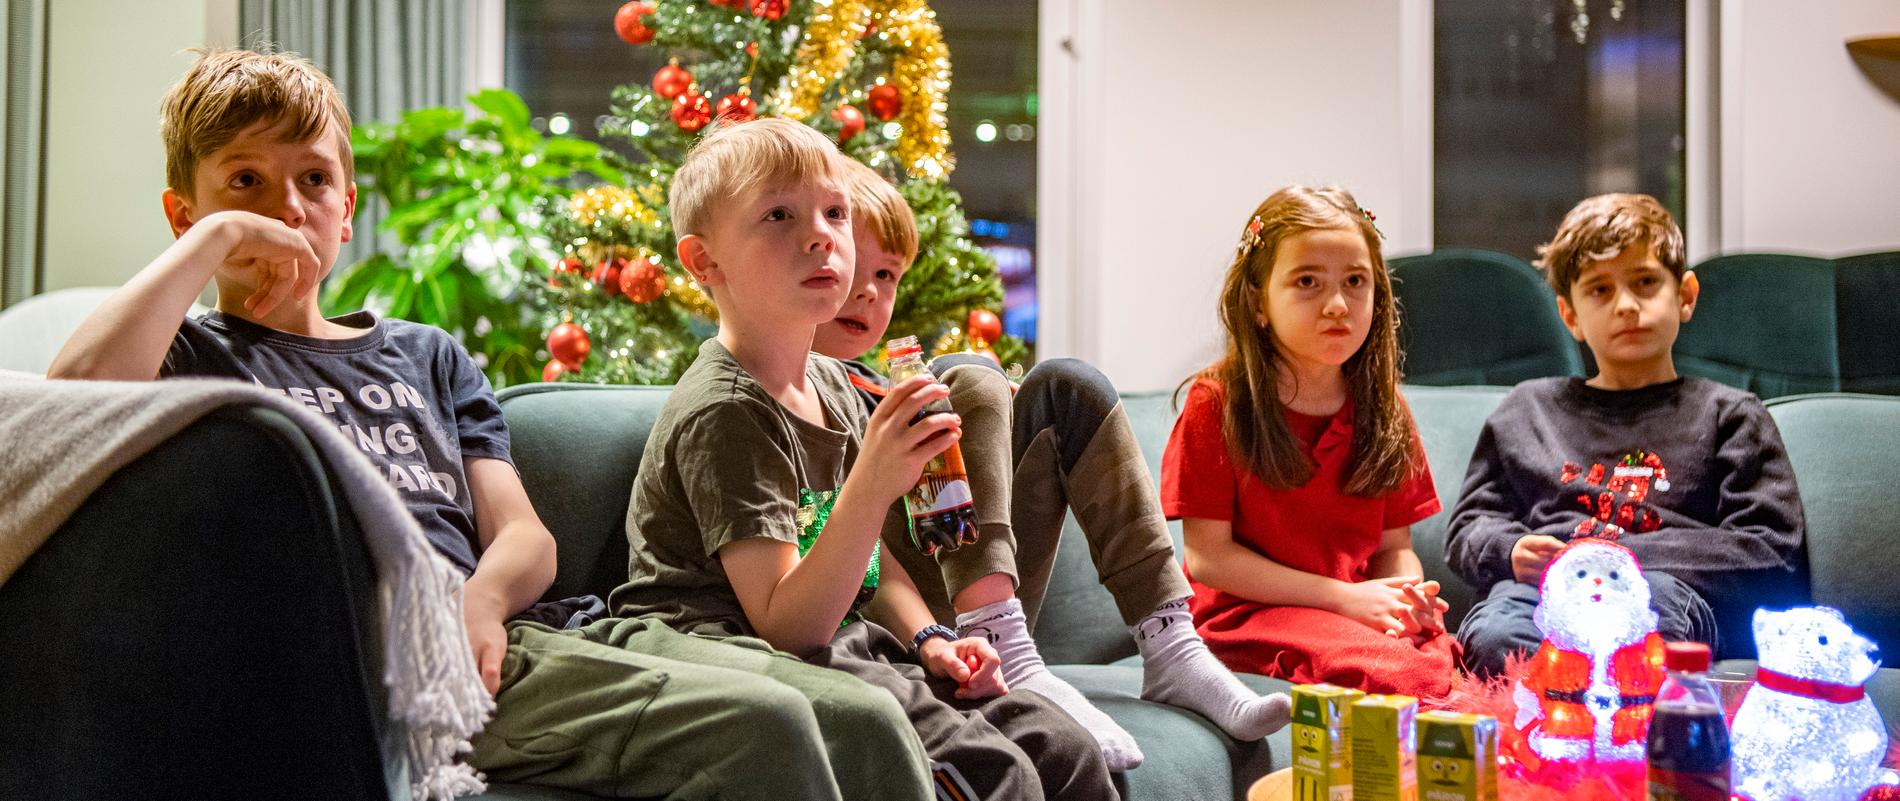 Barnpanelen förhandstittar på SVT:s julkalender ”En hederlig jul med Knyckertz”. Från vänster: Arvid, Anton, Ambjörn, Leona, Liam.